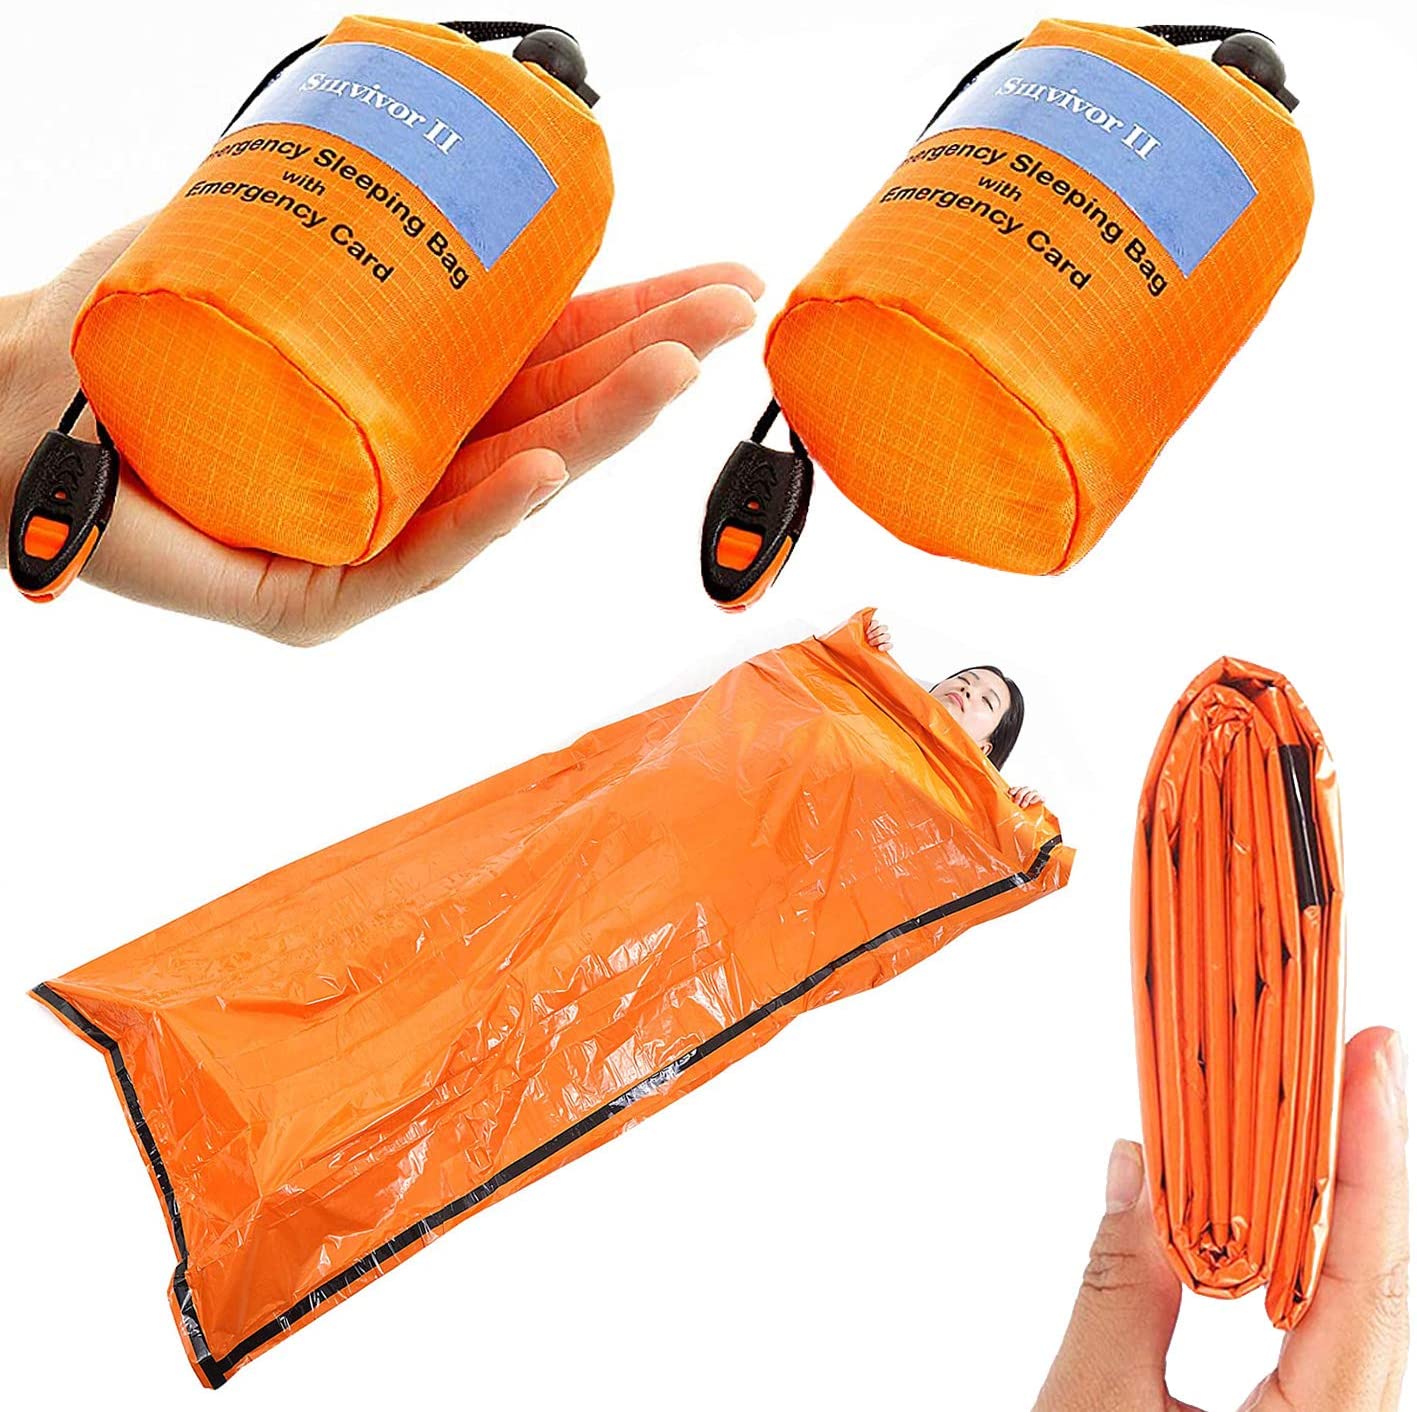 90%の体熱を保つ非常用簡易寝袋 1年保証 携帯 物品 寝袋 非常用 安い ビヴィ 90%の体熱を保つ 防水 災害 登山 防風